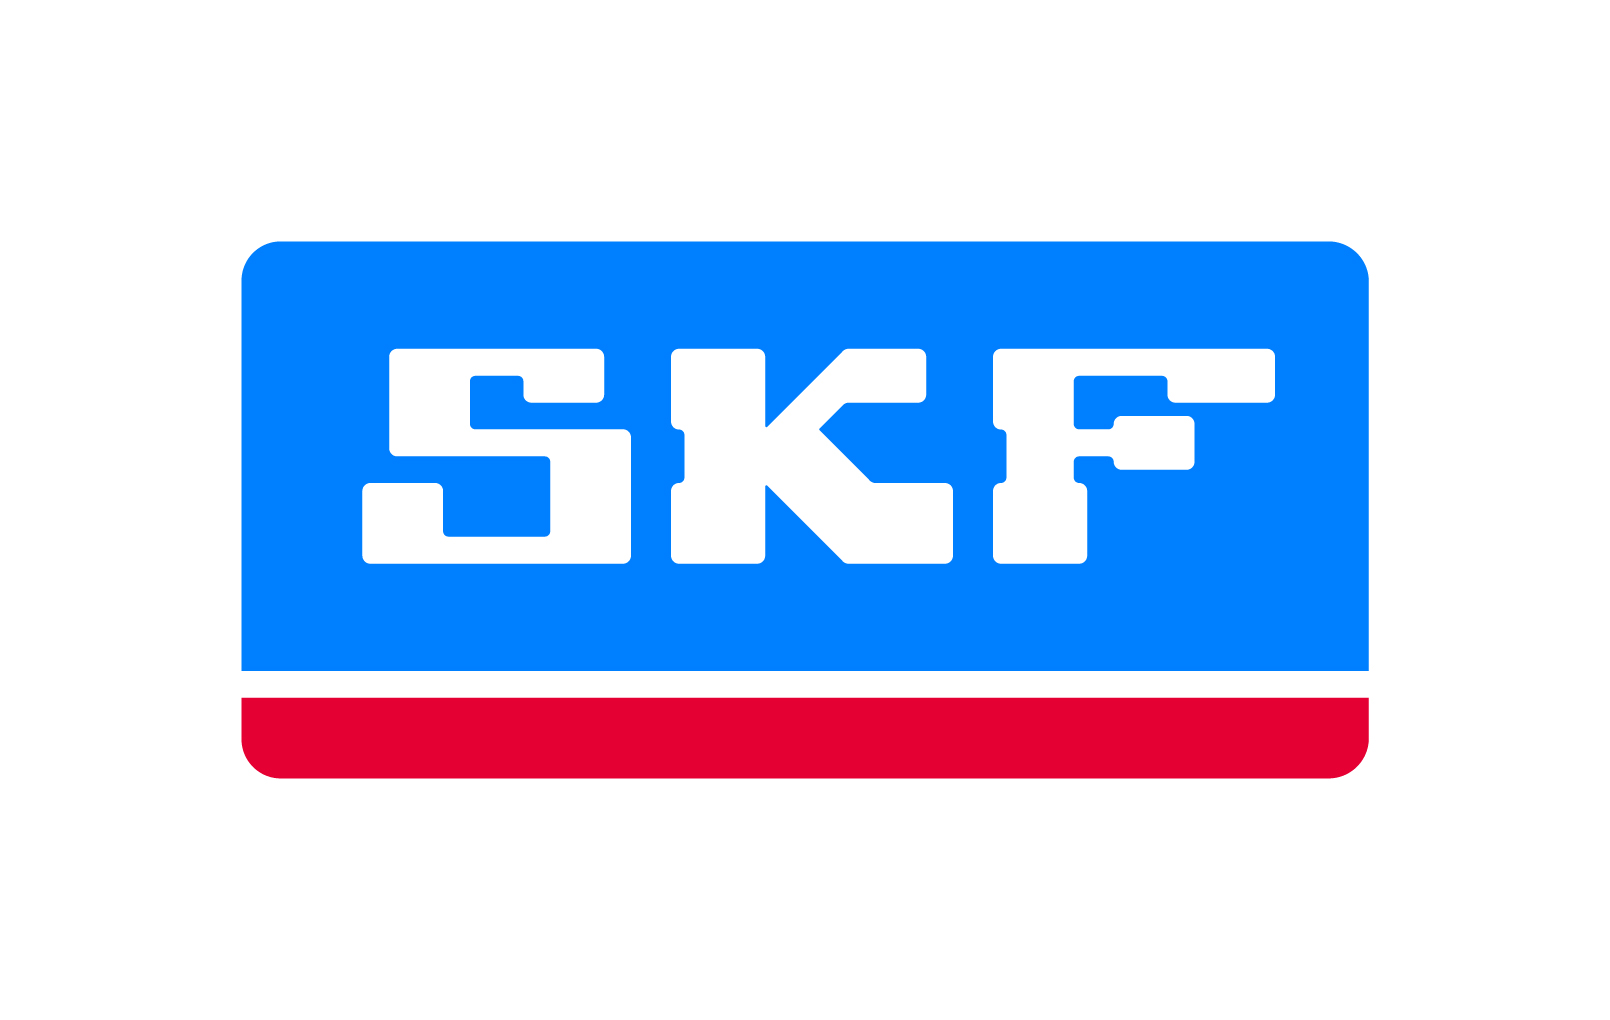 ECO MECA PROG - logo SKF